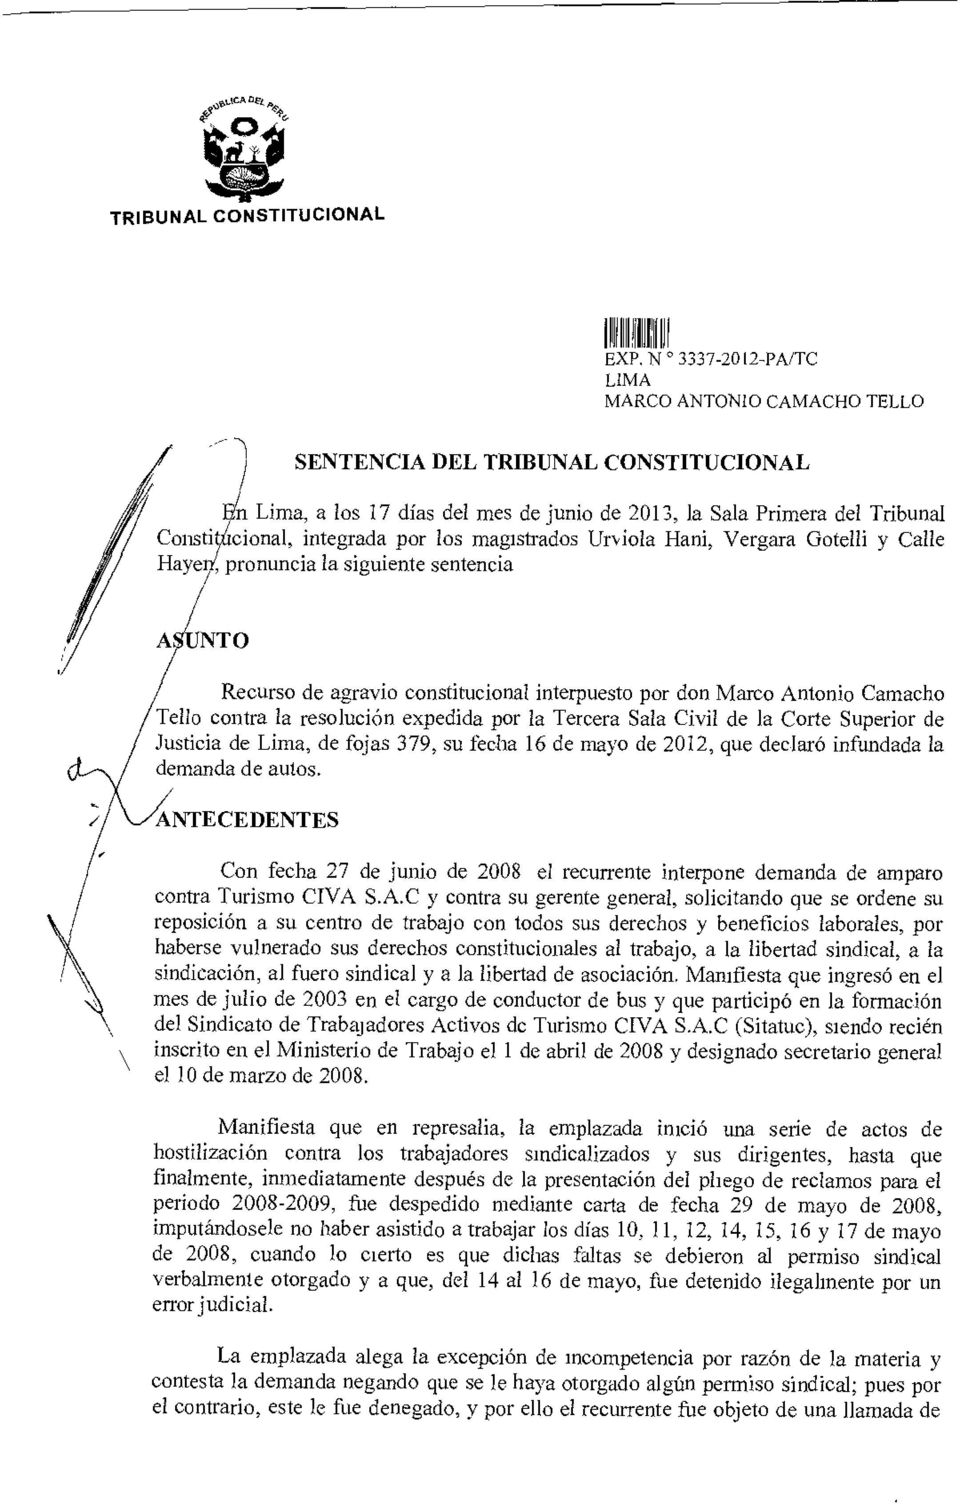 Civil de la Corte Superior de Justicia de Lima, de fojas 379, su fecha 16 de mayo de 2012, que declaró infundada la demanda de autos.